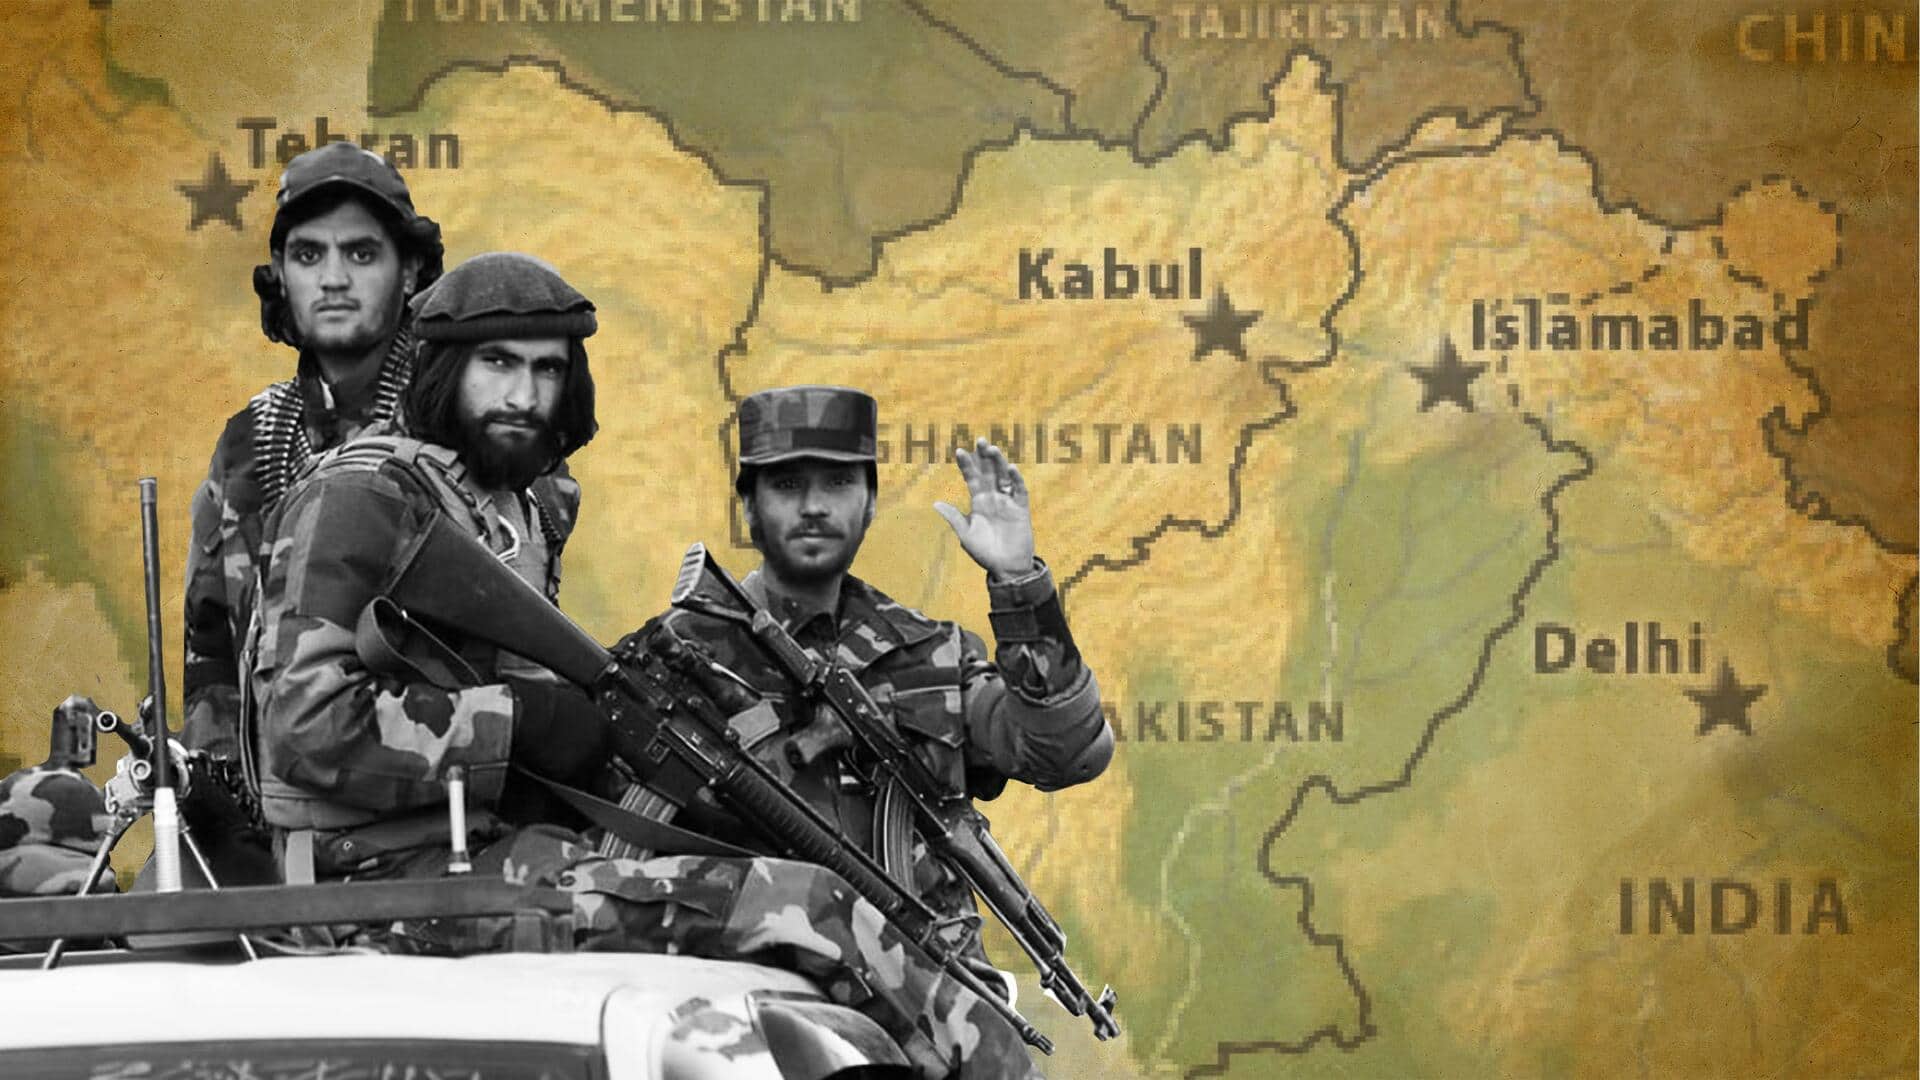 पाकिस्तान आतंकी हमले झेलने में दक्षिण एशिया में शीर्ष पर पहुंचा, अफगानिस्तान को पीछे छोड़ा